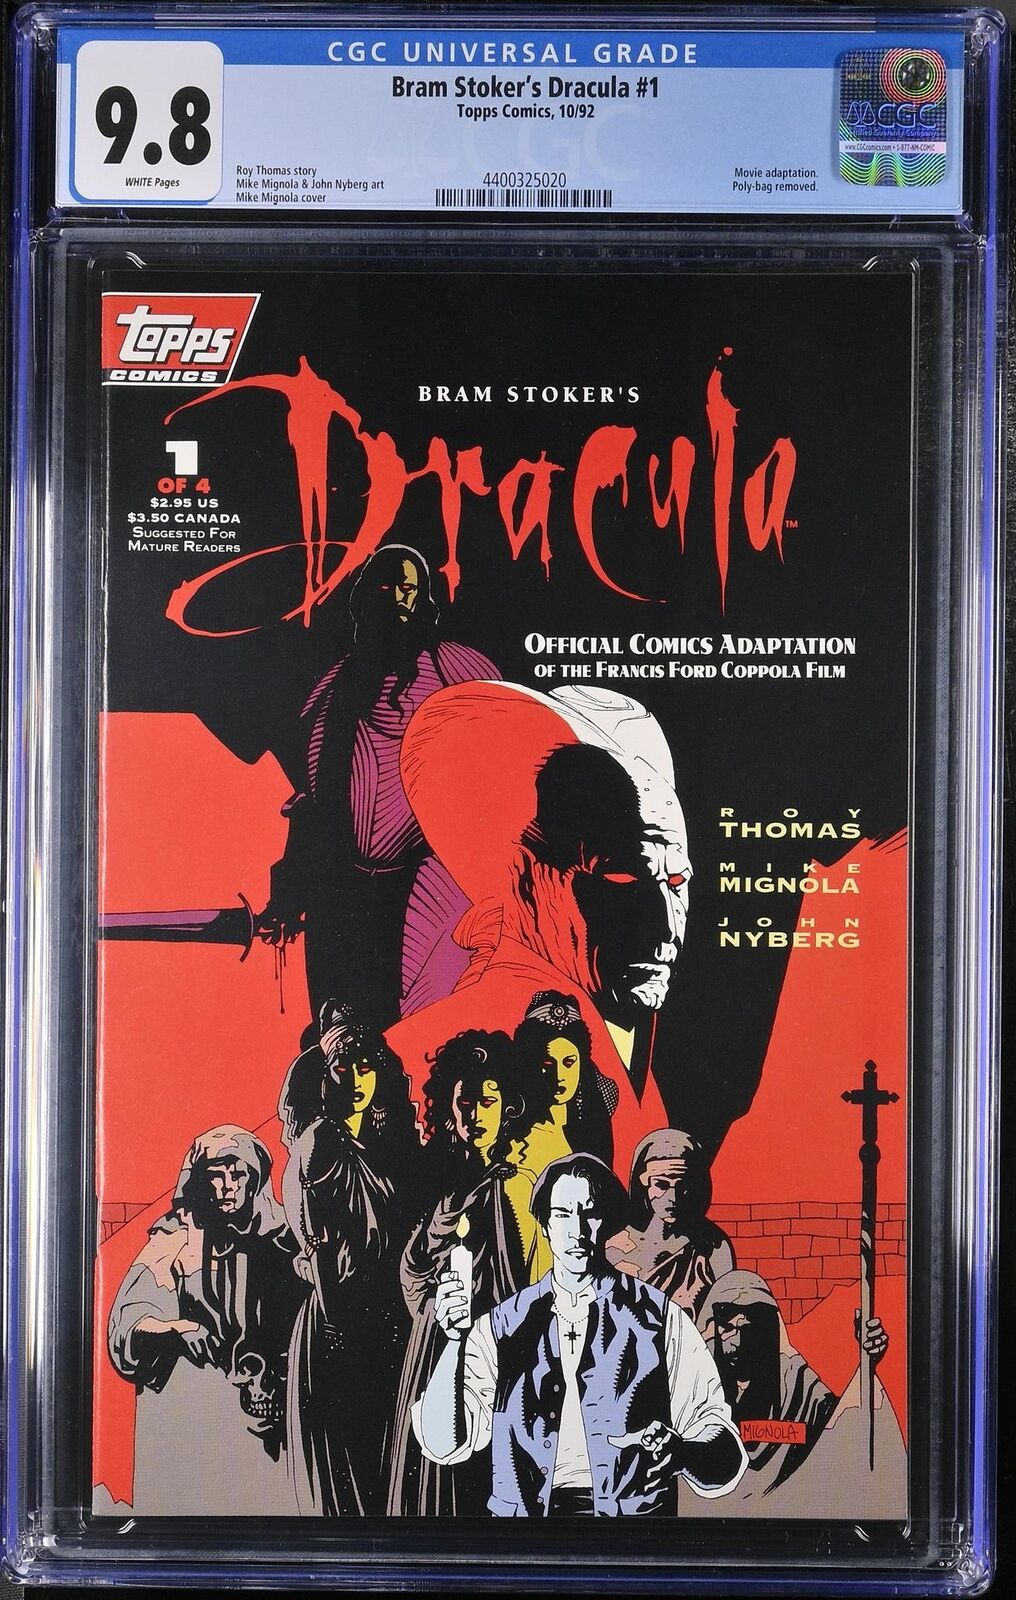 Bram Stoker's Dracula 1 CGC 9.8 1992 4400325020 Movie Adaptation Scarce